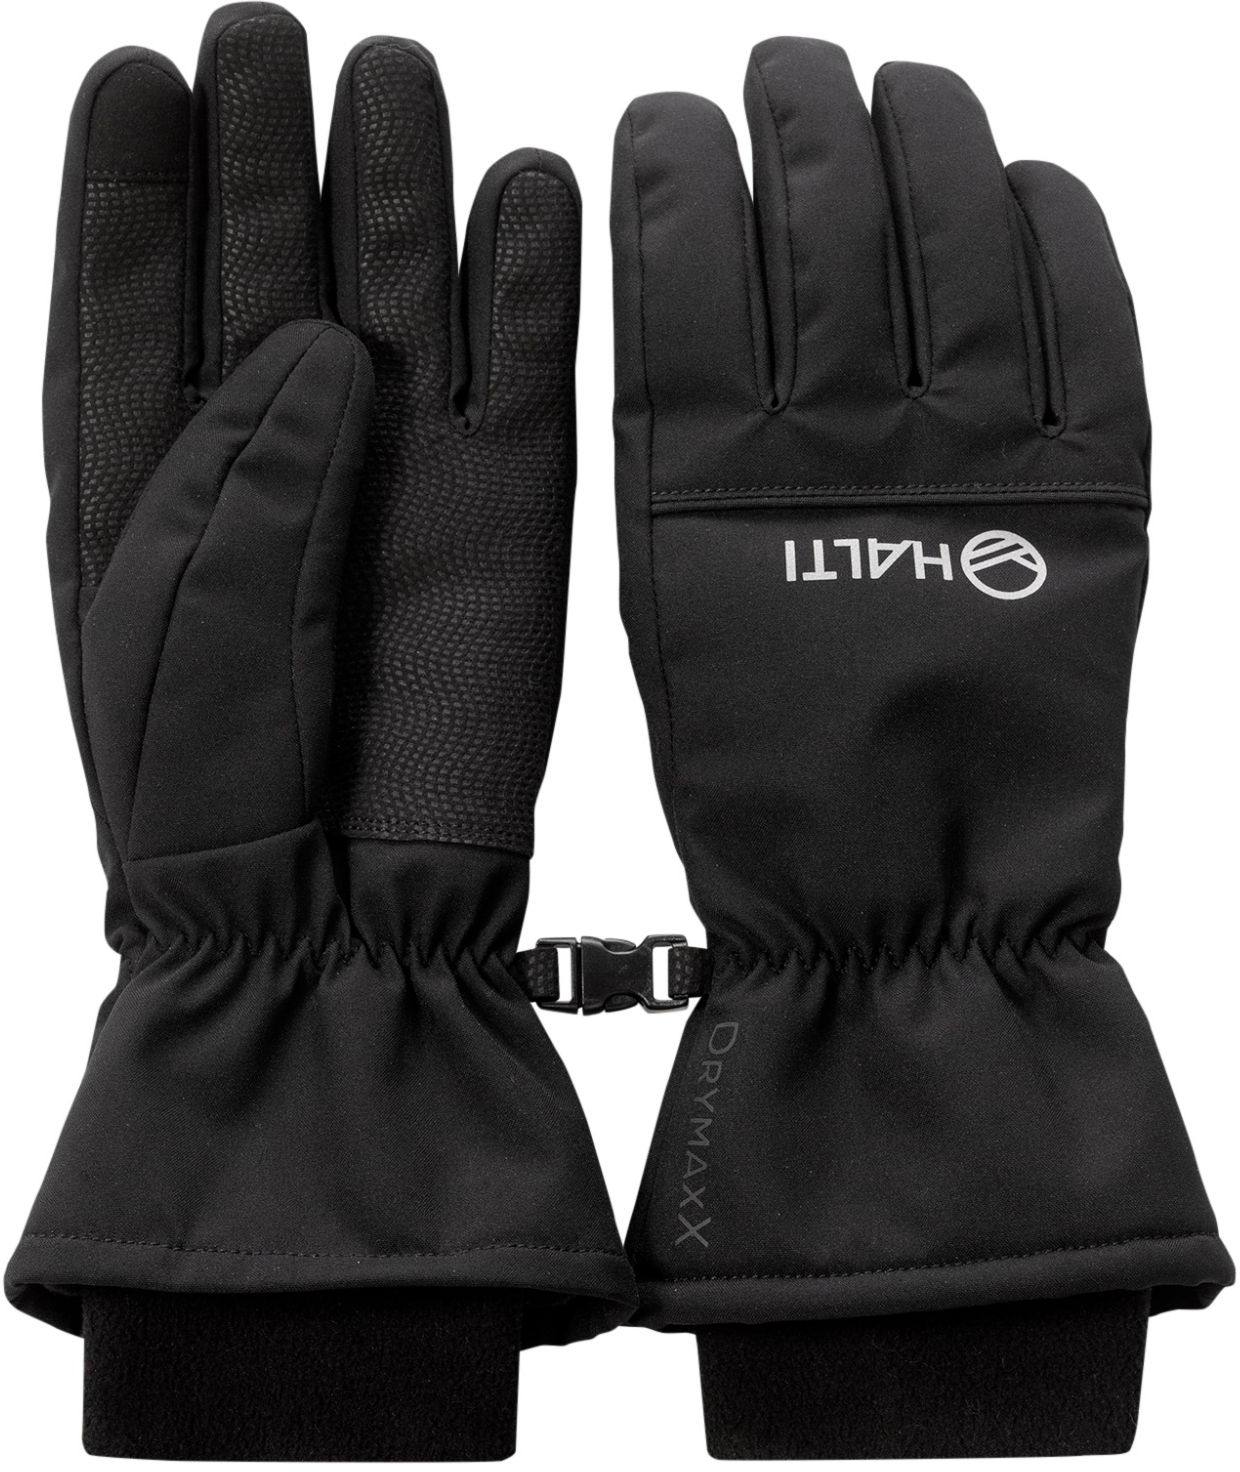 Halti Alium DX Gloves Black XL